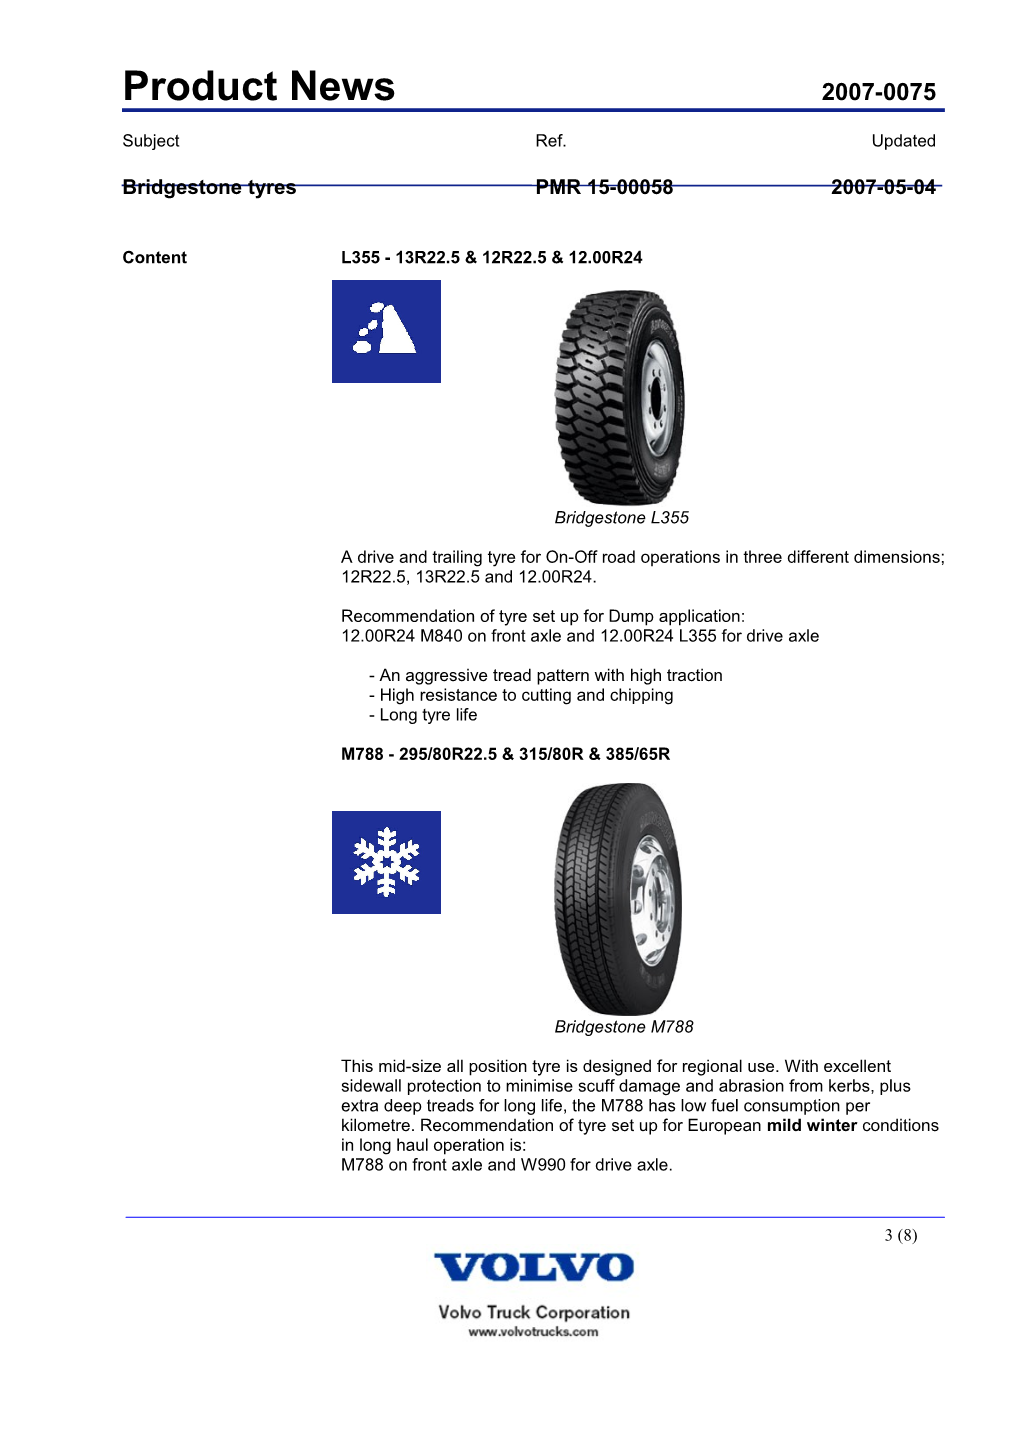 Bridgestone Tyrespmr 15-000582007-05-04